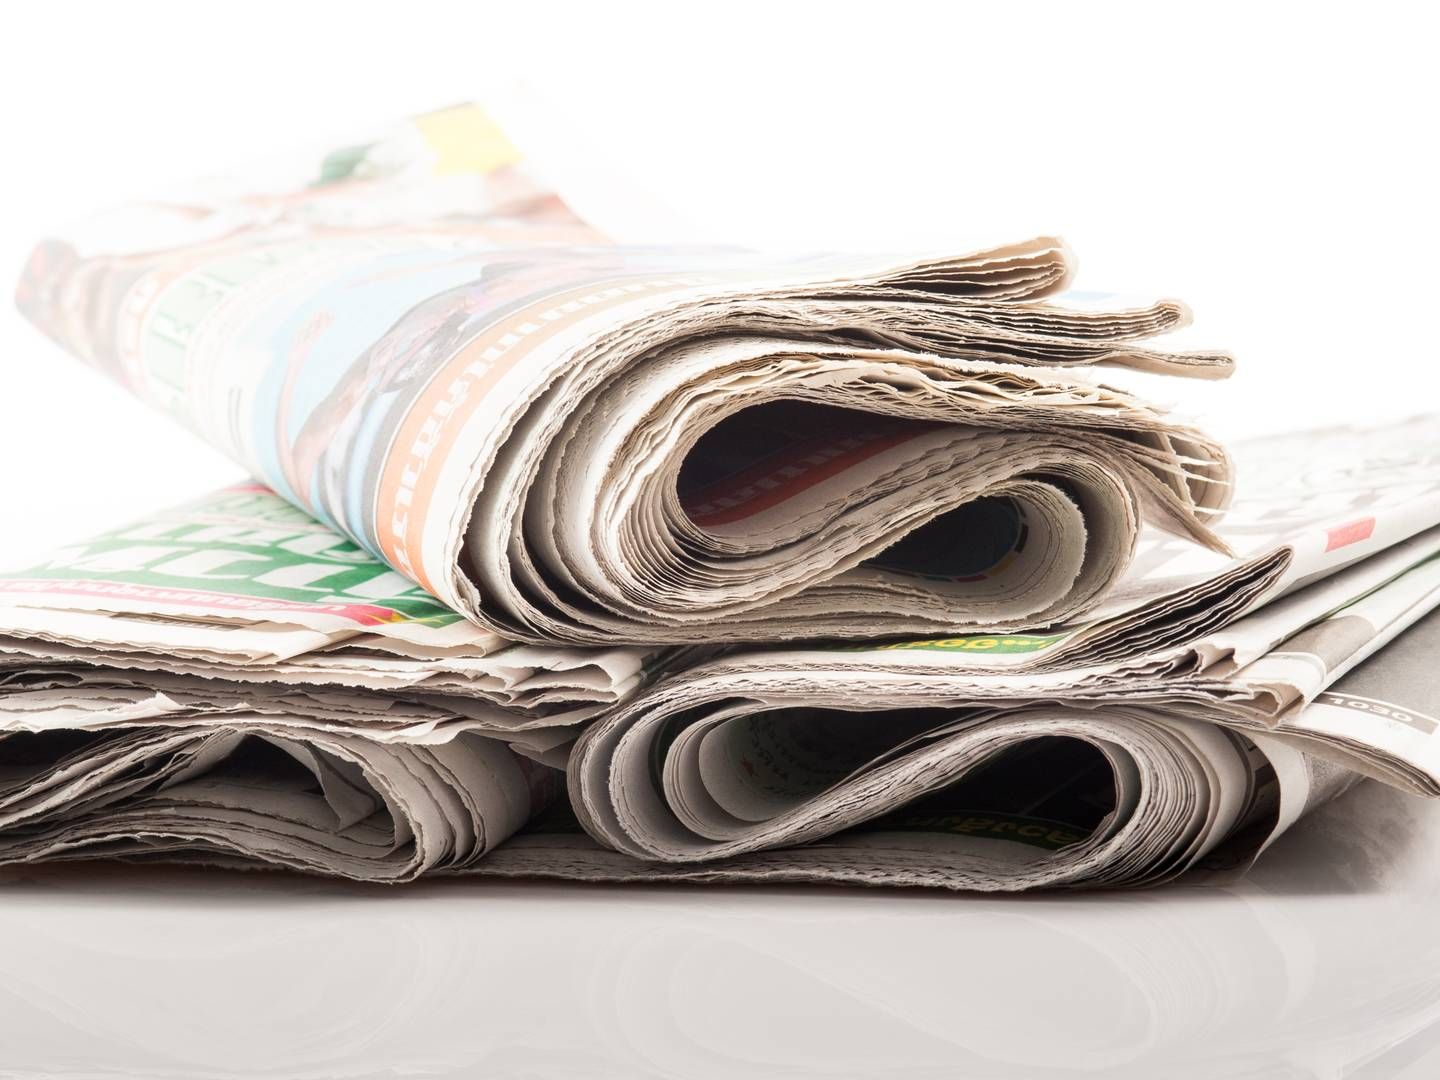 Siden december har mediekoncernen Det Nordjyske Mediehus droppet omdelingen af avisen til løssalg. | Foto: Colourbox